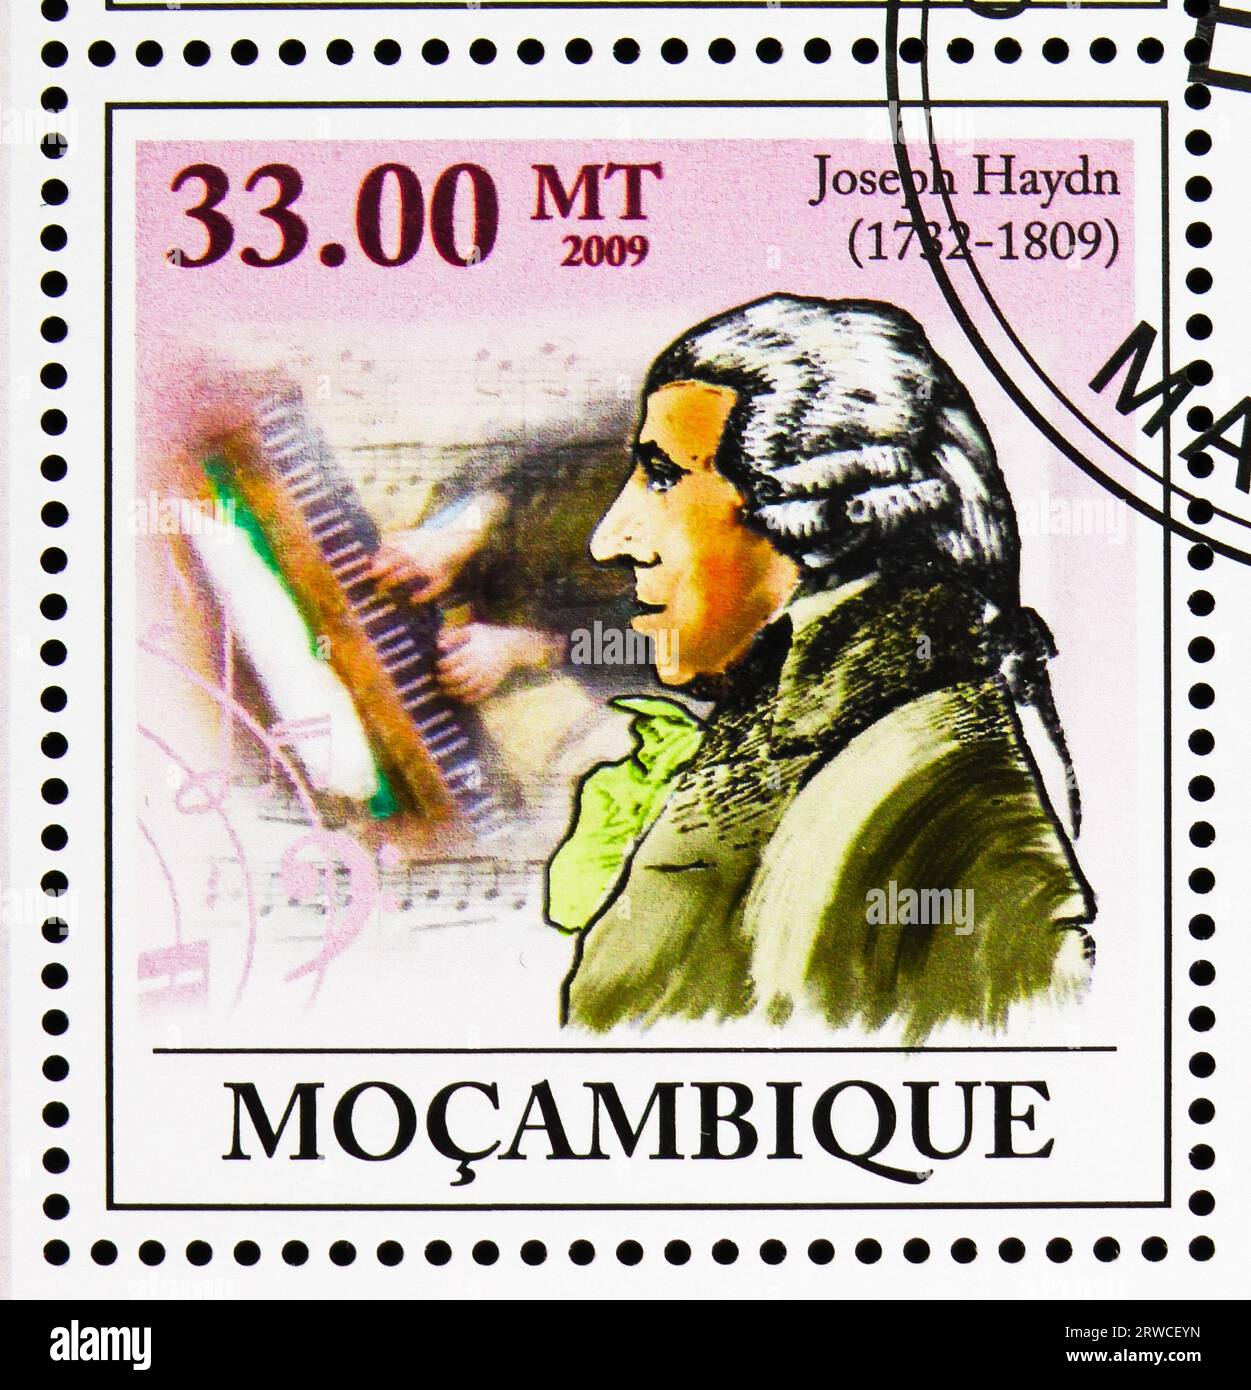 MOSCOU, RUSSIE - 12 JUILLET 2022 : timbre-poste imprimé au Mozambique montre de profil, Joseph Haydn, série 200e anniversaire de la mort (2009), vers 2009 Banque D'Images